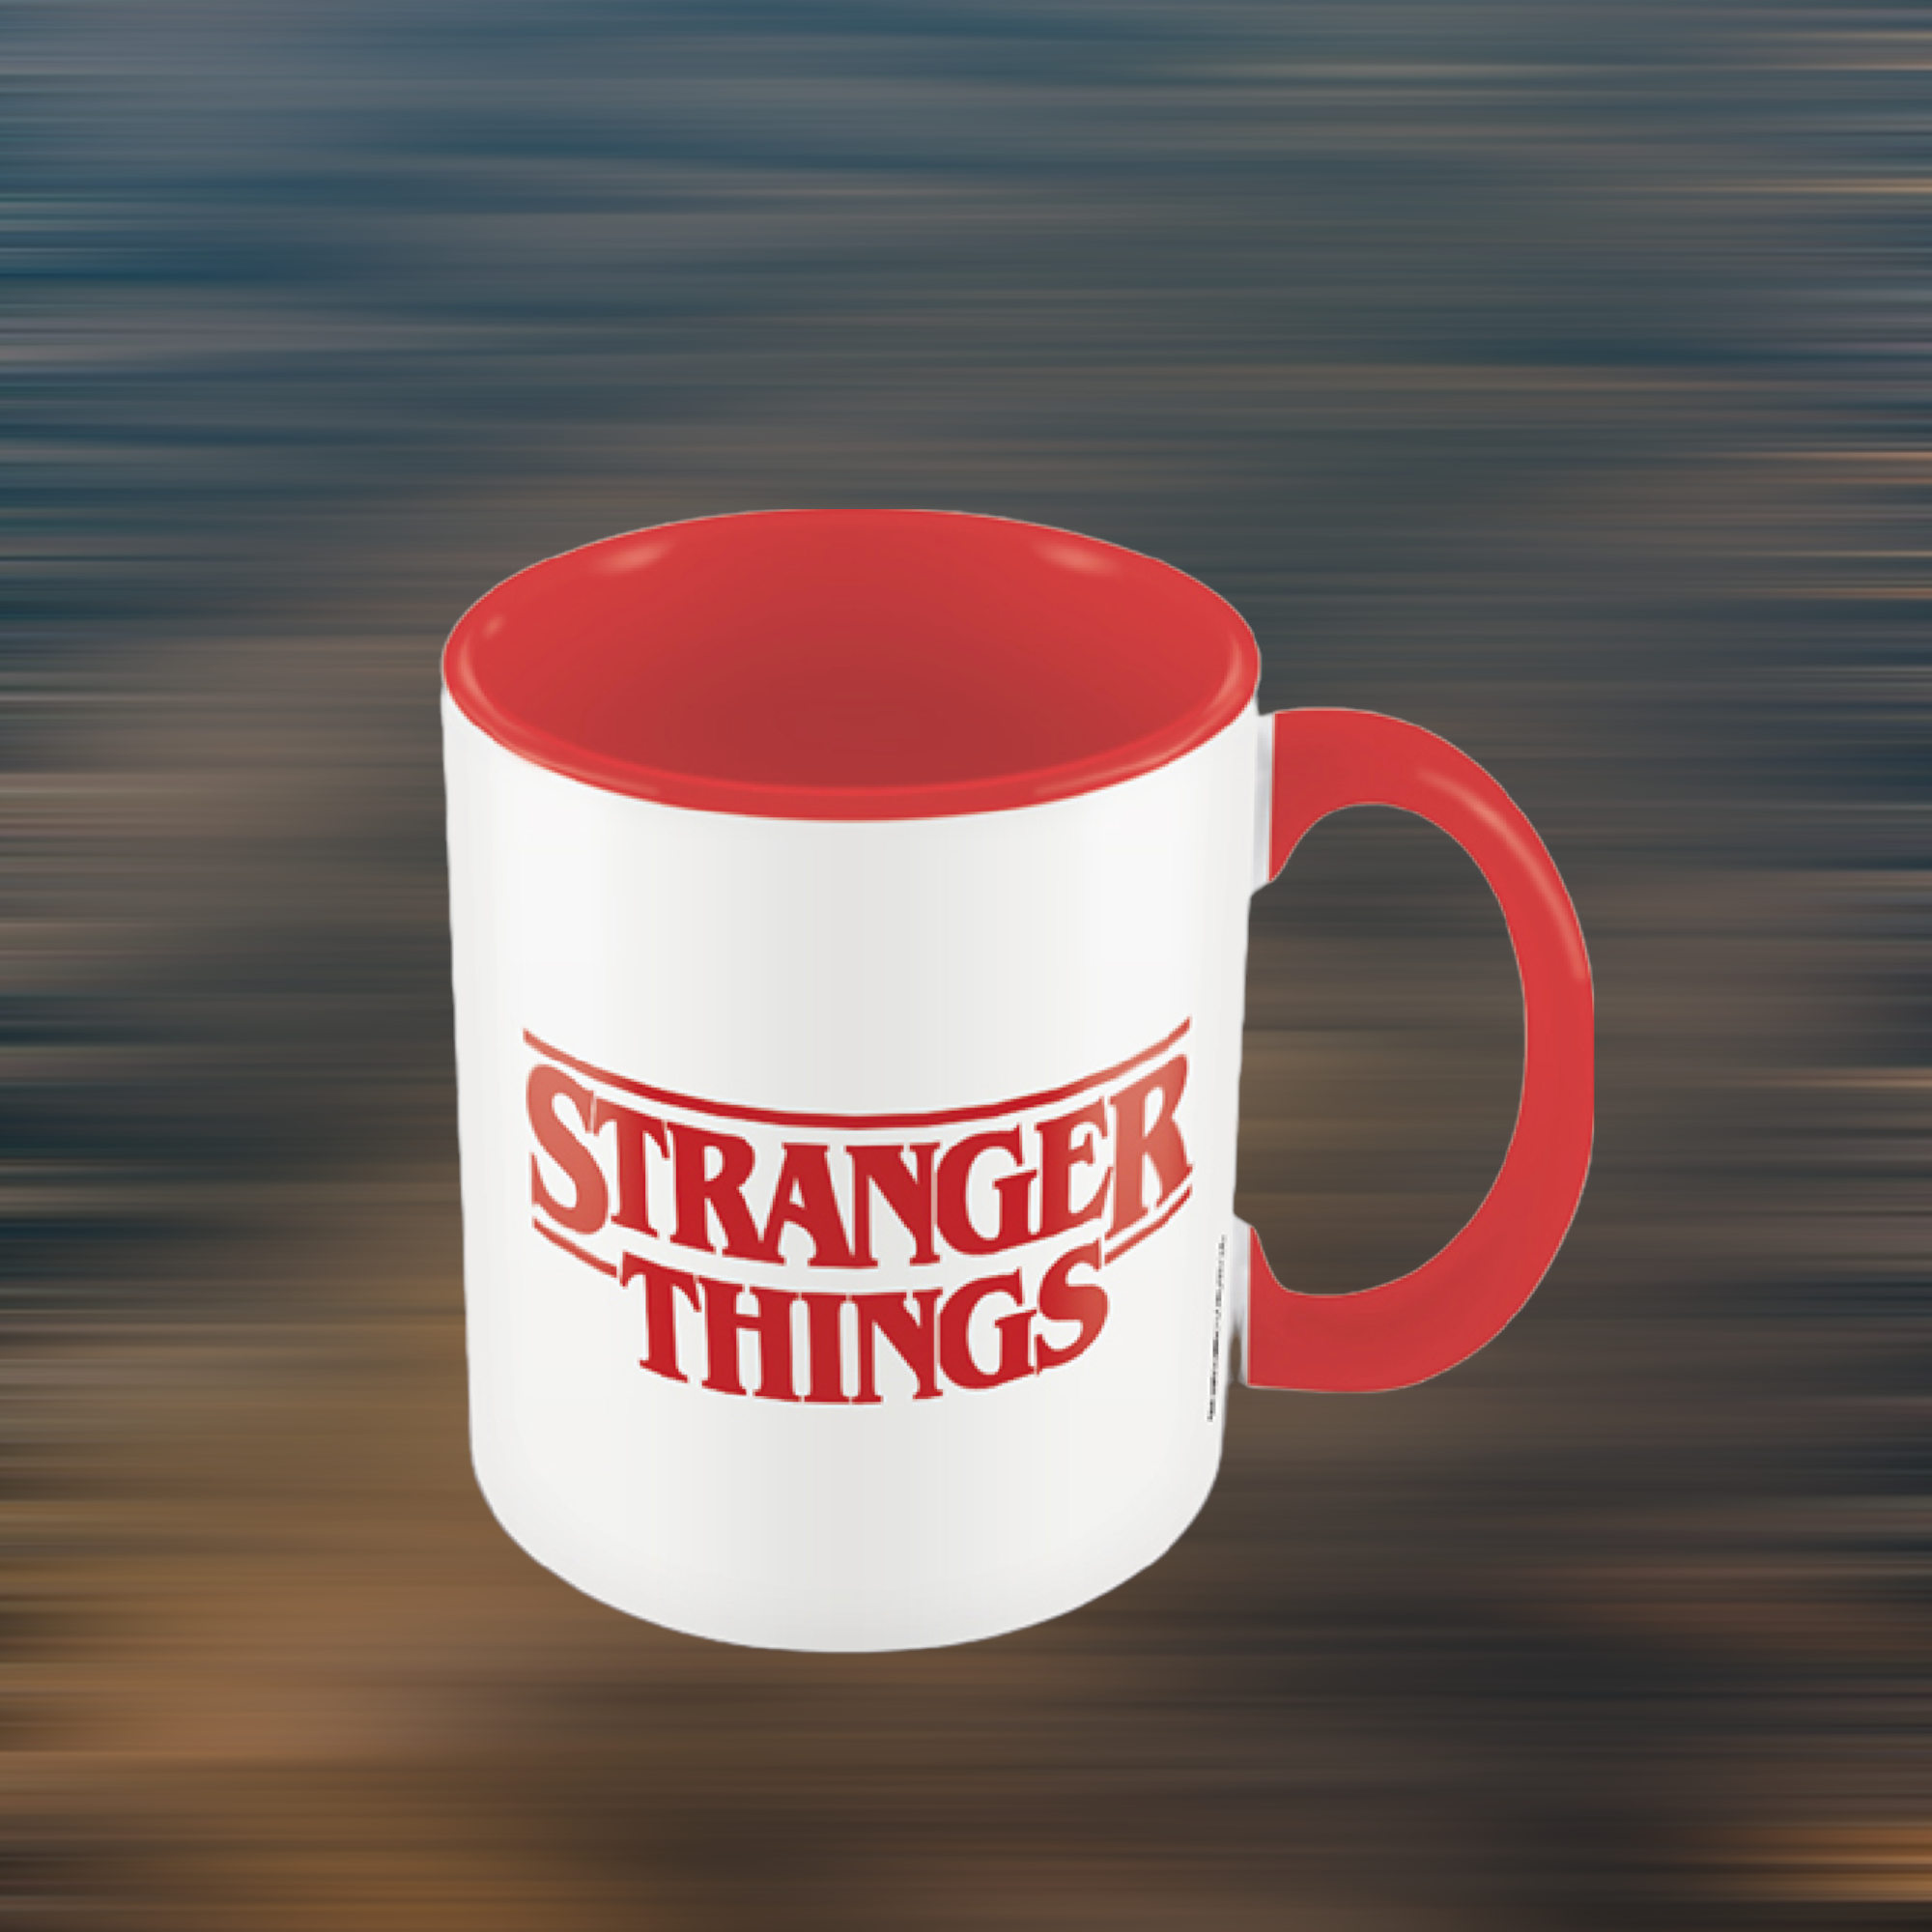 Netflix - Stranger Things : Mug intérieur coloré